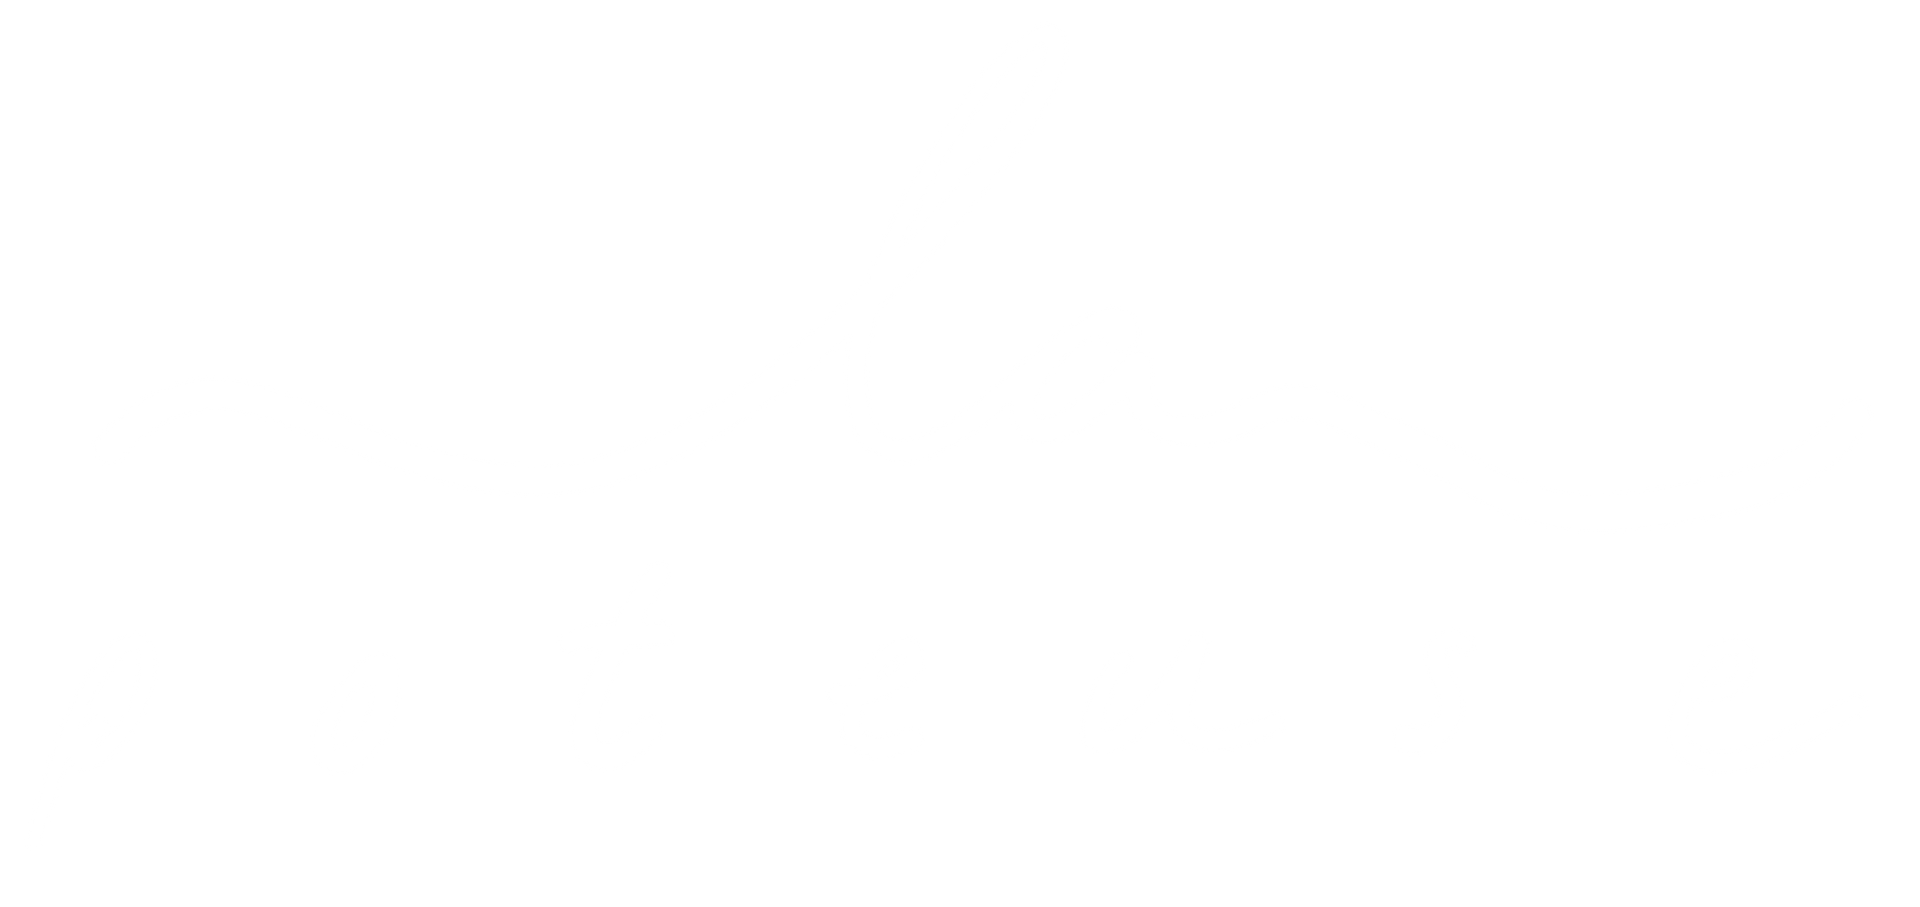 LA POTEUSE logo